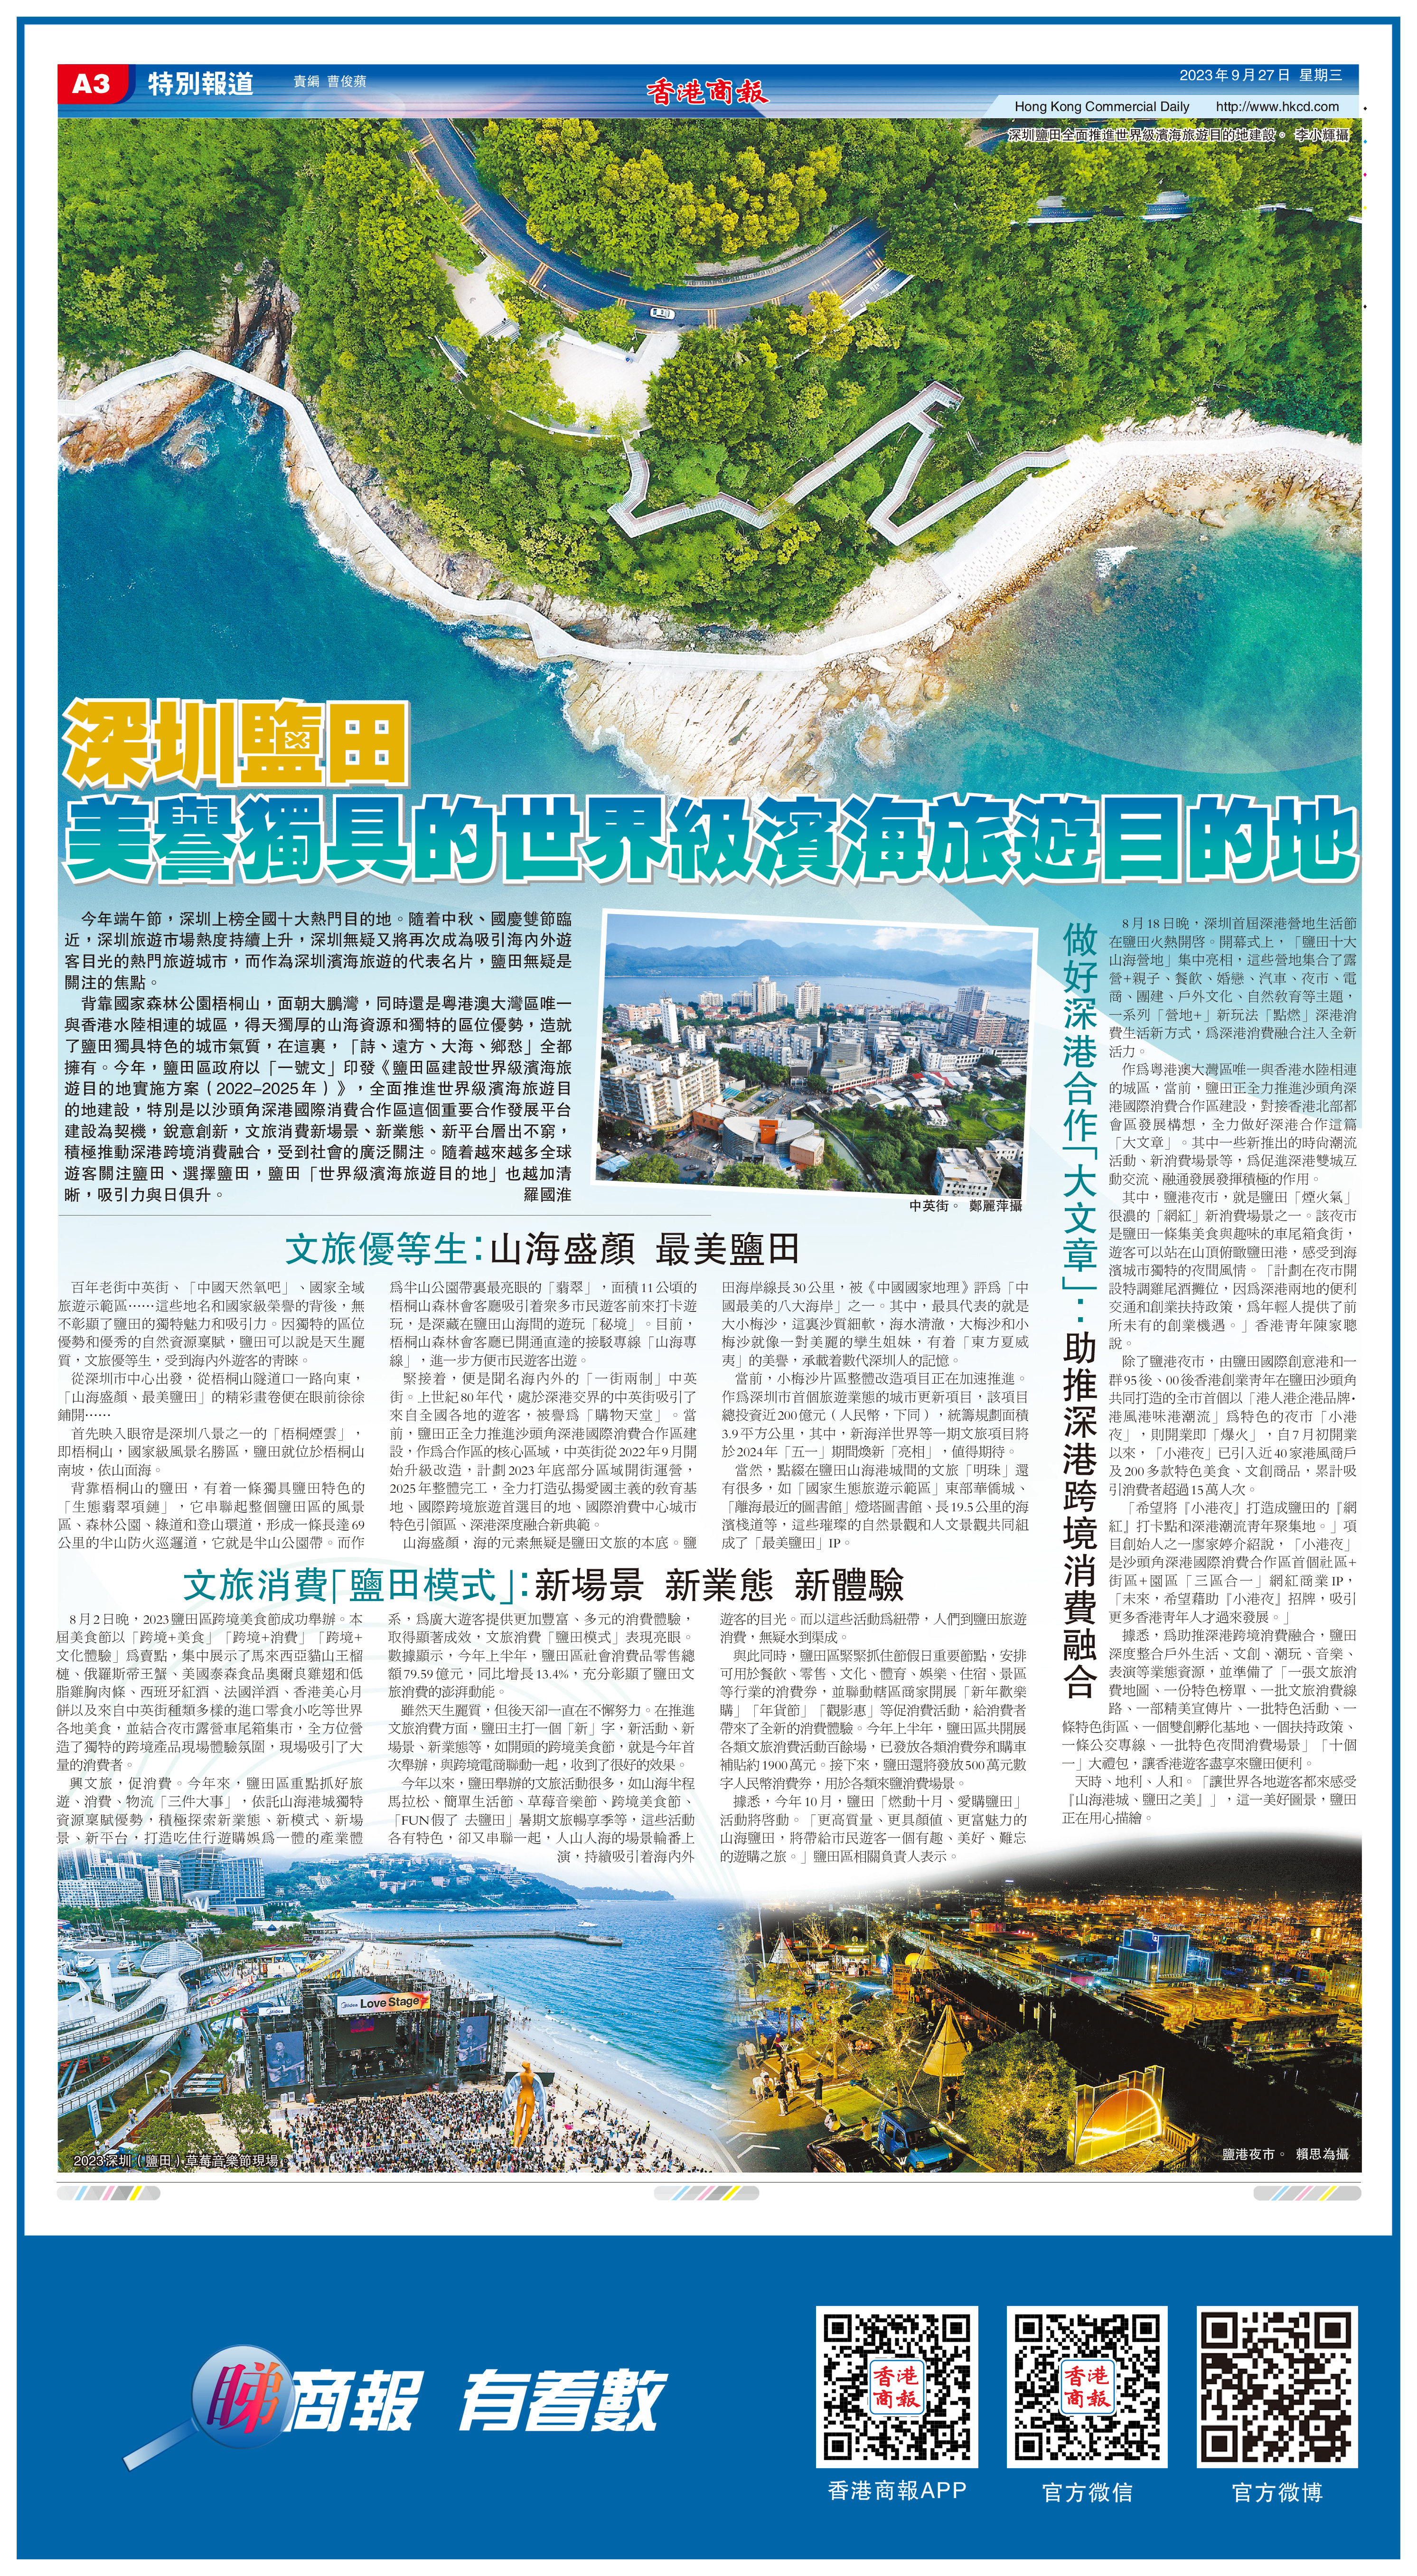 深圳鹽田 美譽獨具的世界級濱海旅遊目的地